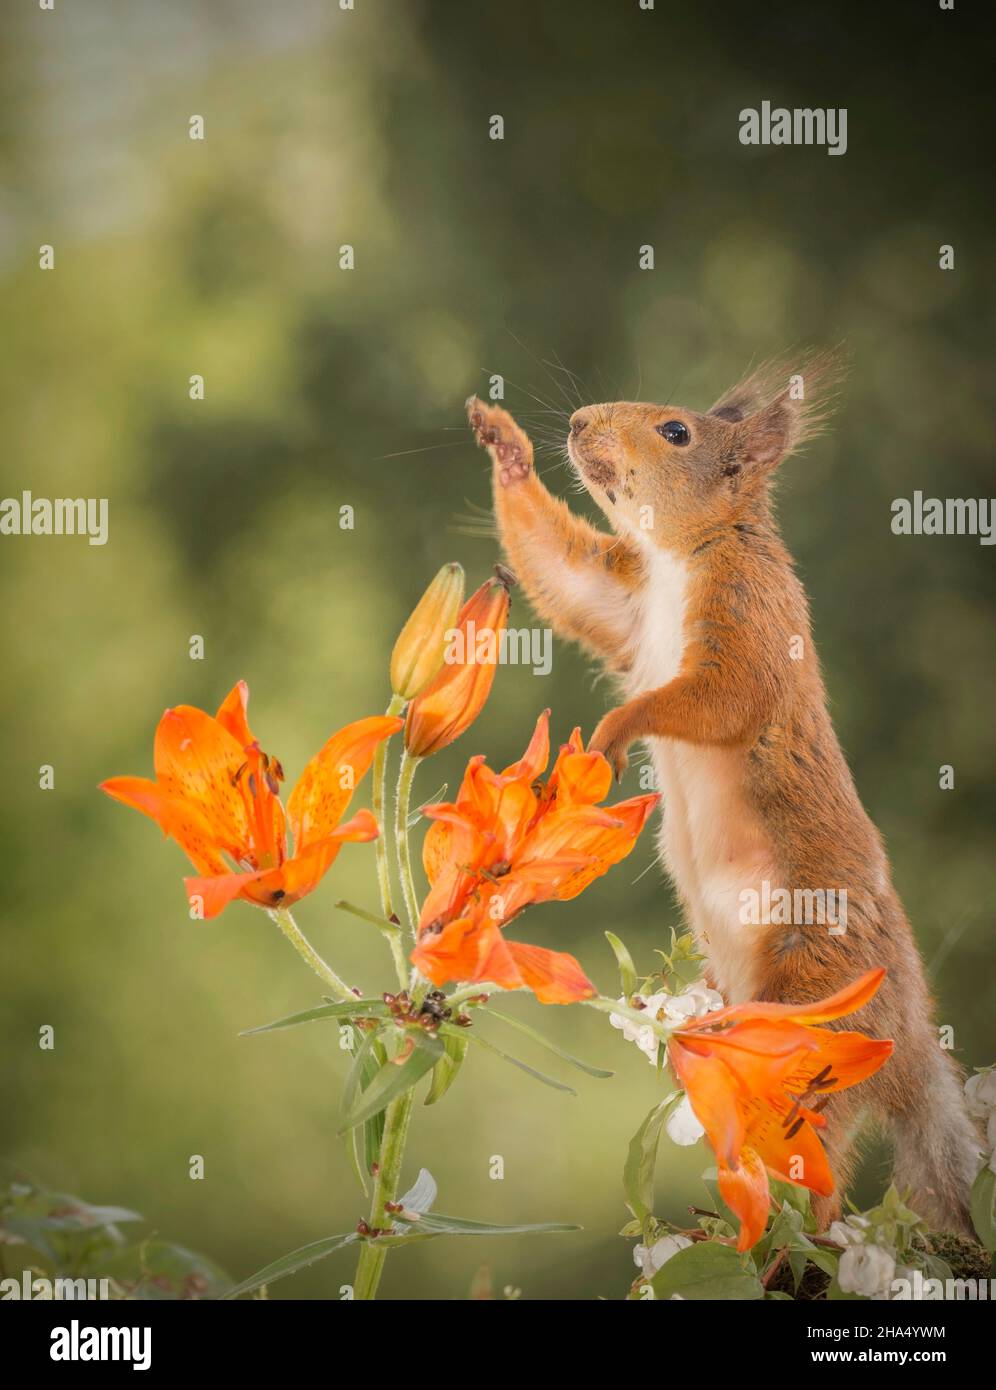 Nahaufnahme des roten Eichhörnchens mit einer Lilie und einem orangen Pollen im Gesicht, der sich nach oben streckt Stockfoto